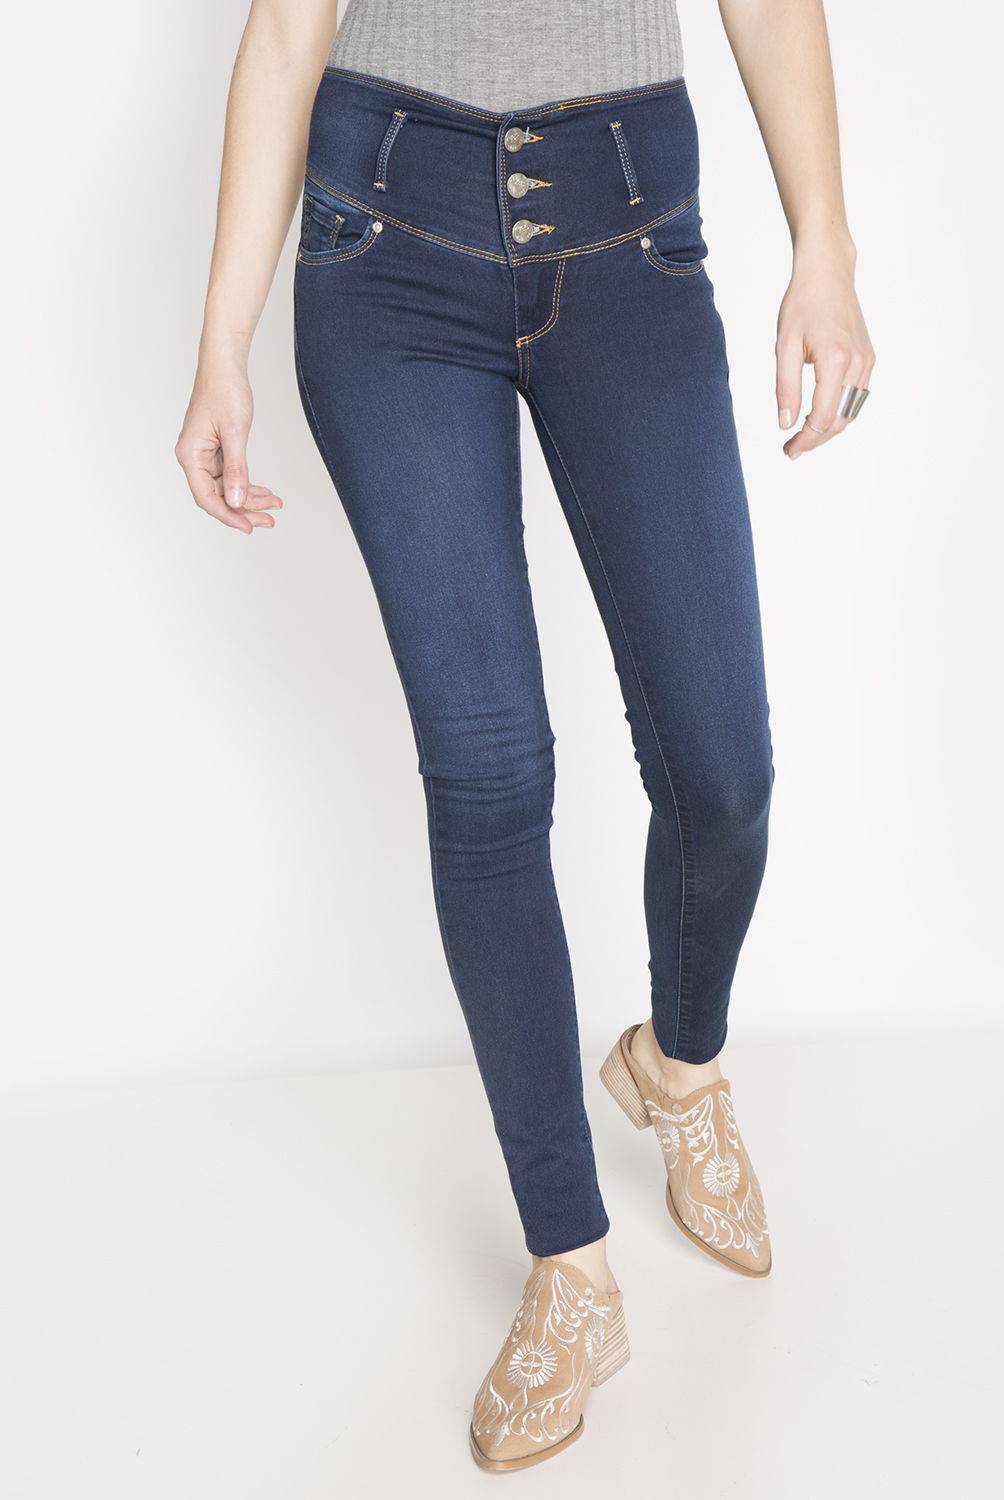 LEE - Lee Jeans Skinny Tiro Medio Mujer